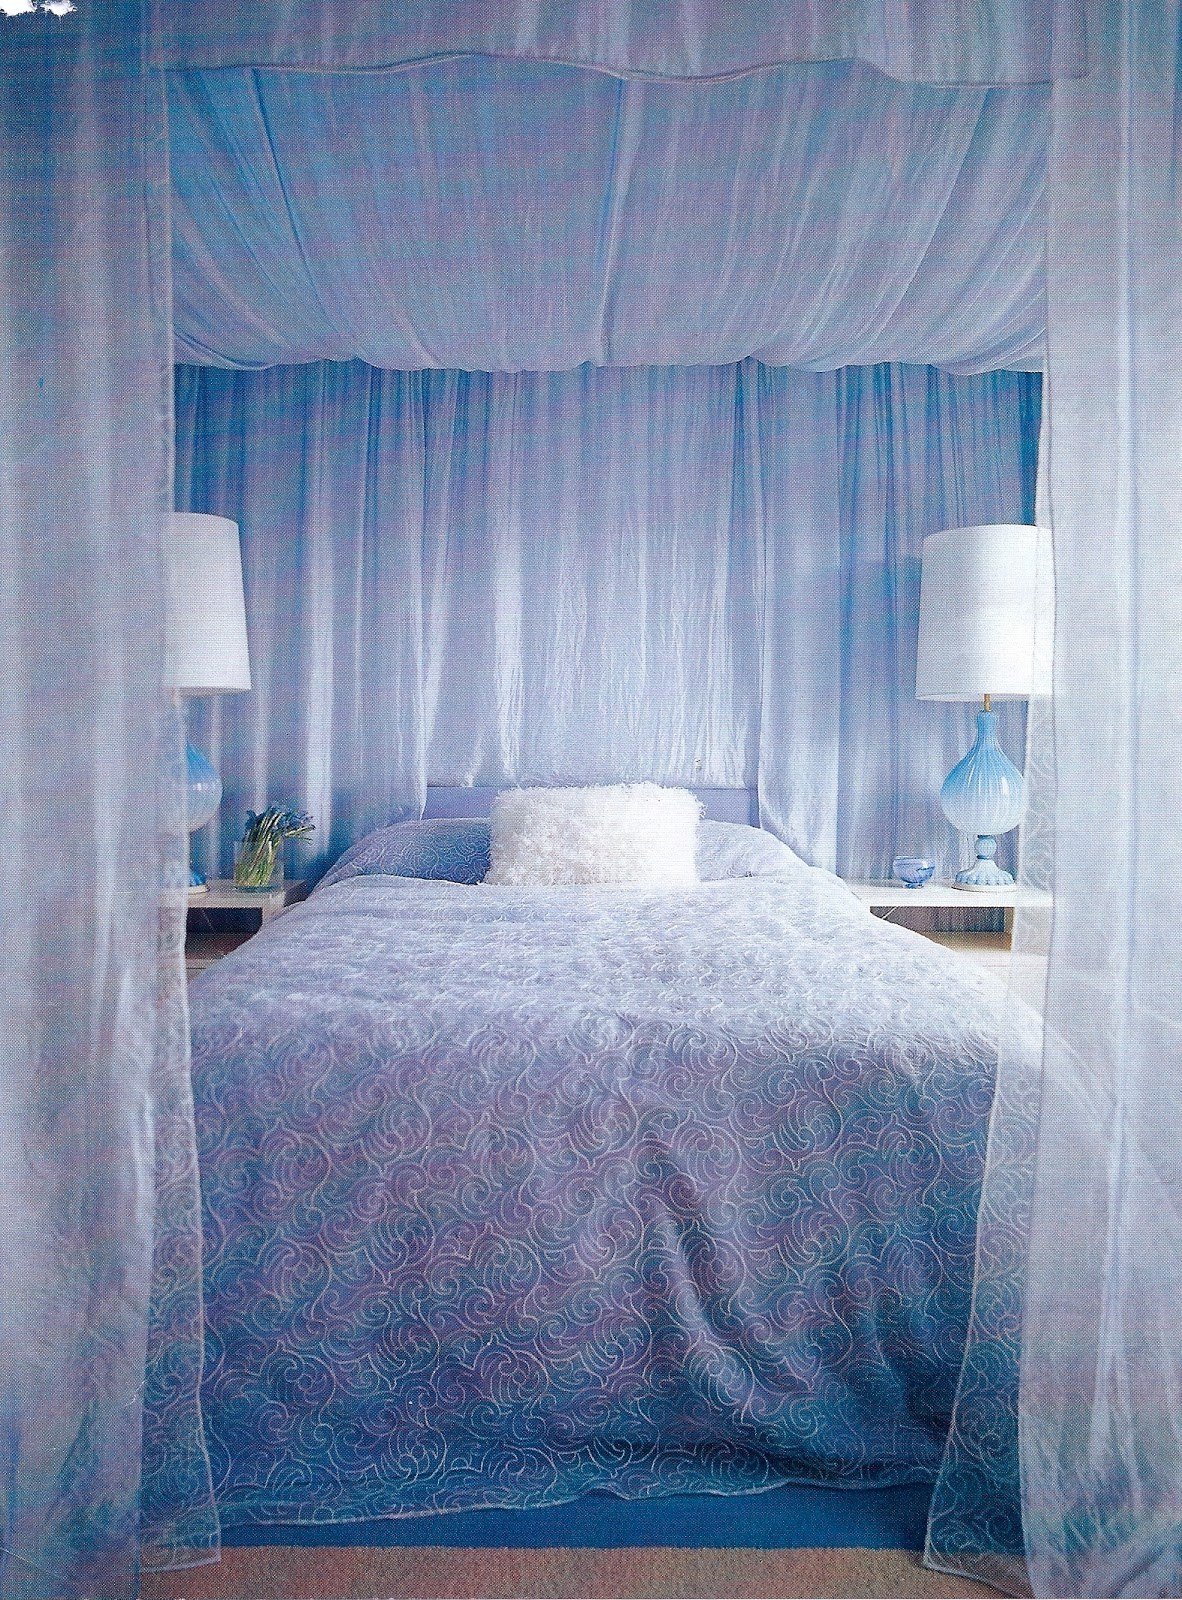 Шторка для кровати. Спальня с балдахином. Кровать с занавесками. Занавески в спальню. Кровать с балдахином в интерьере.